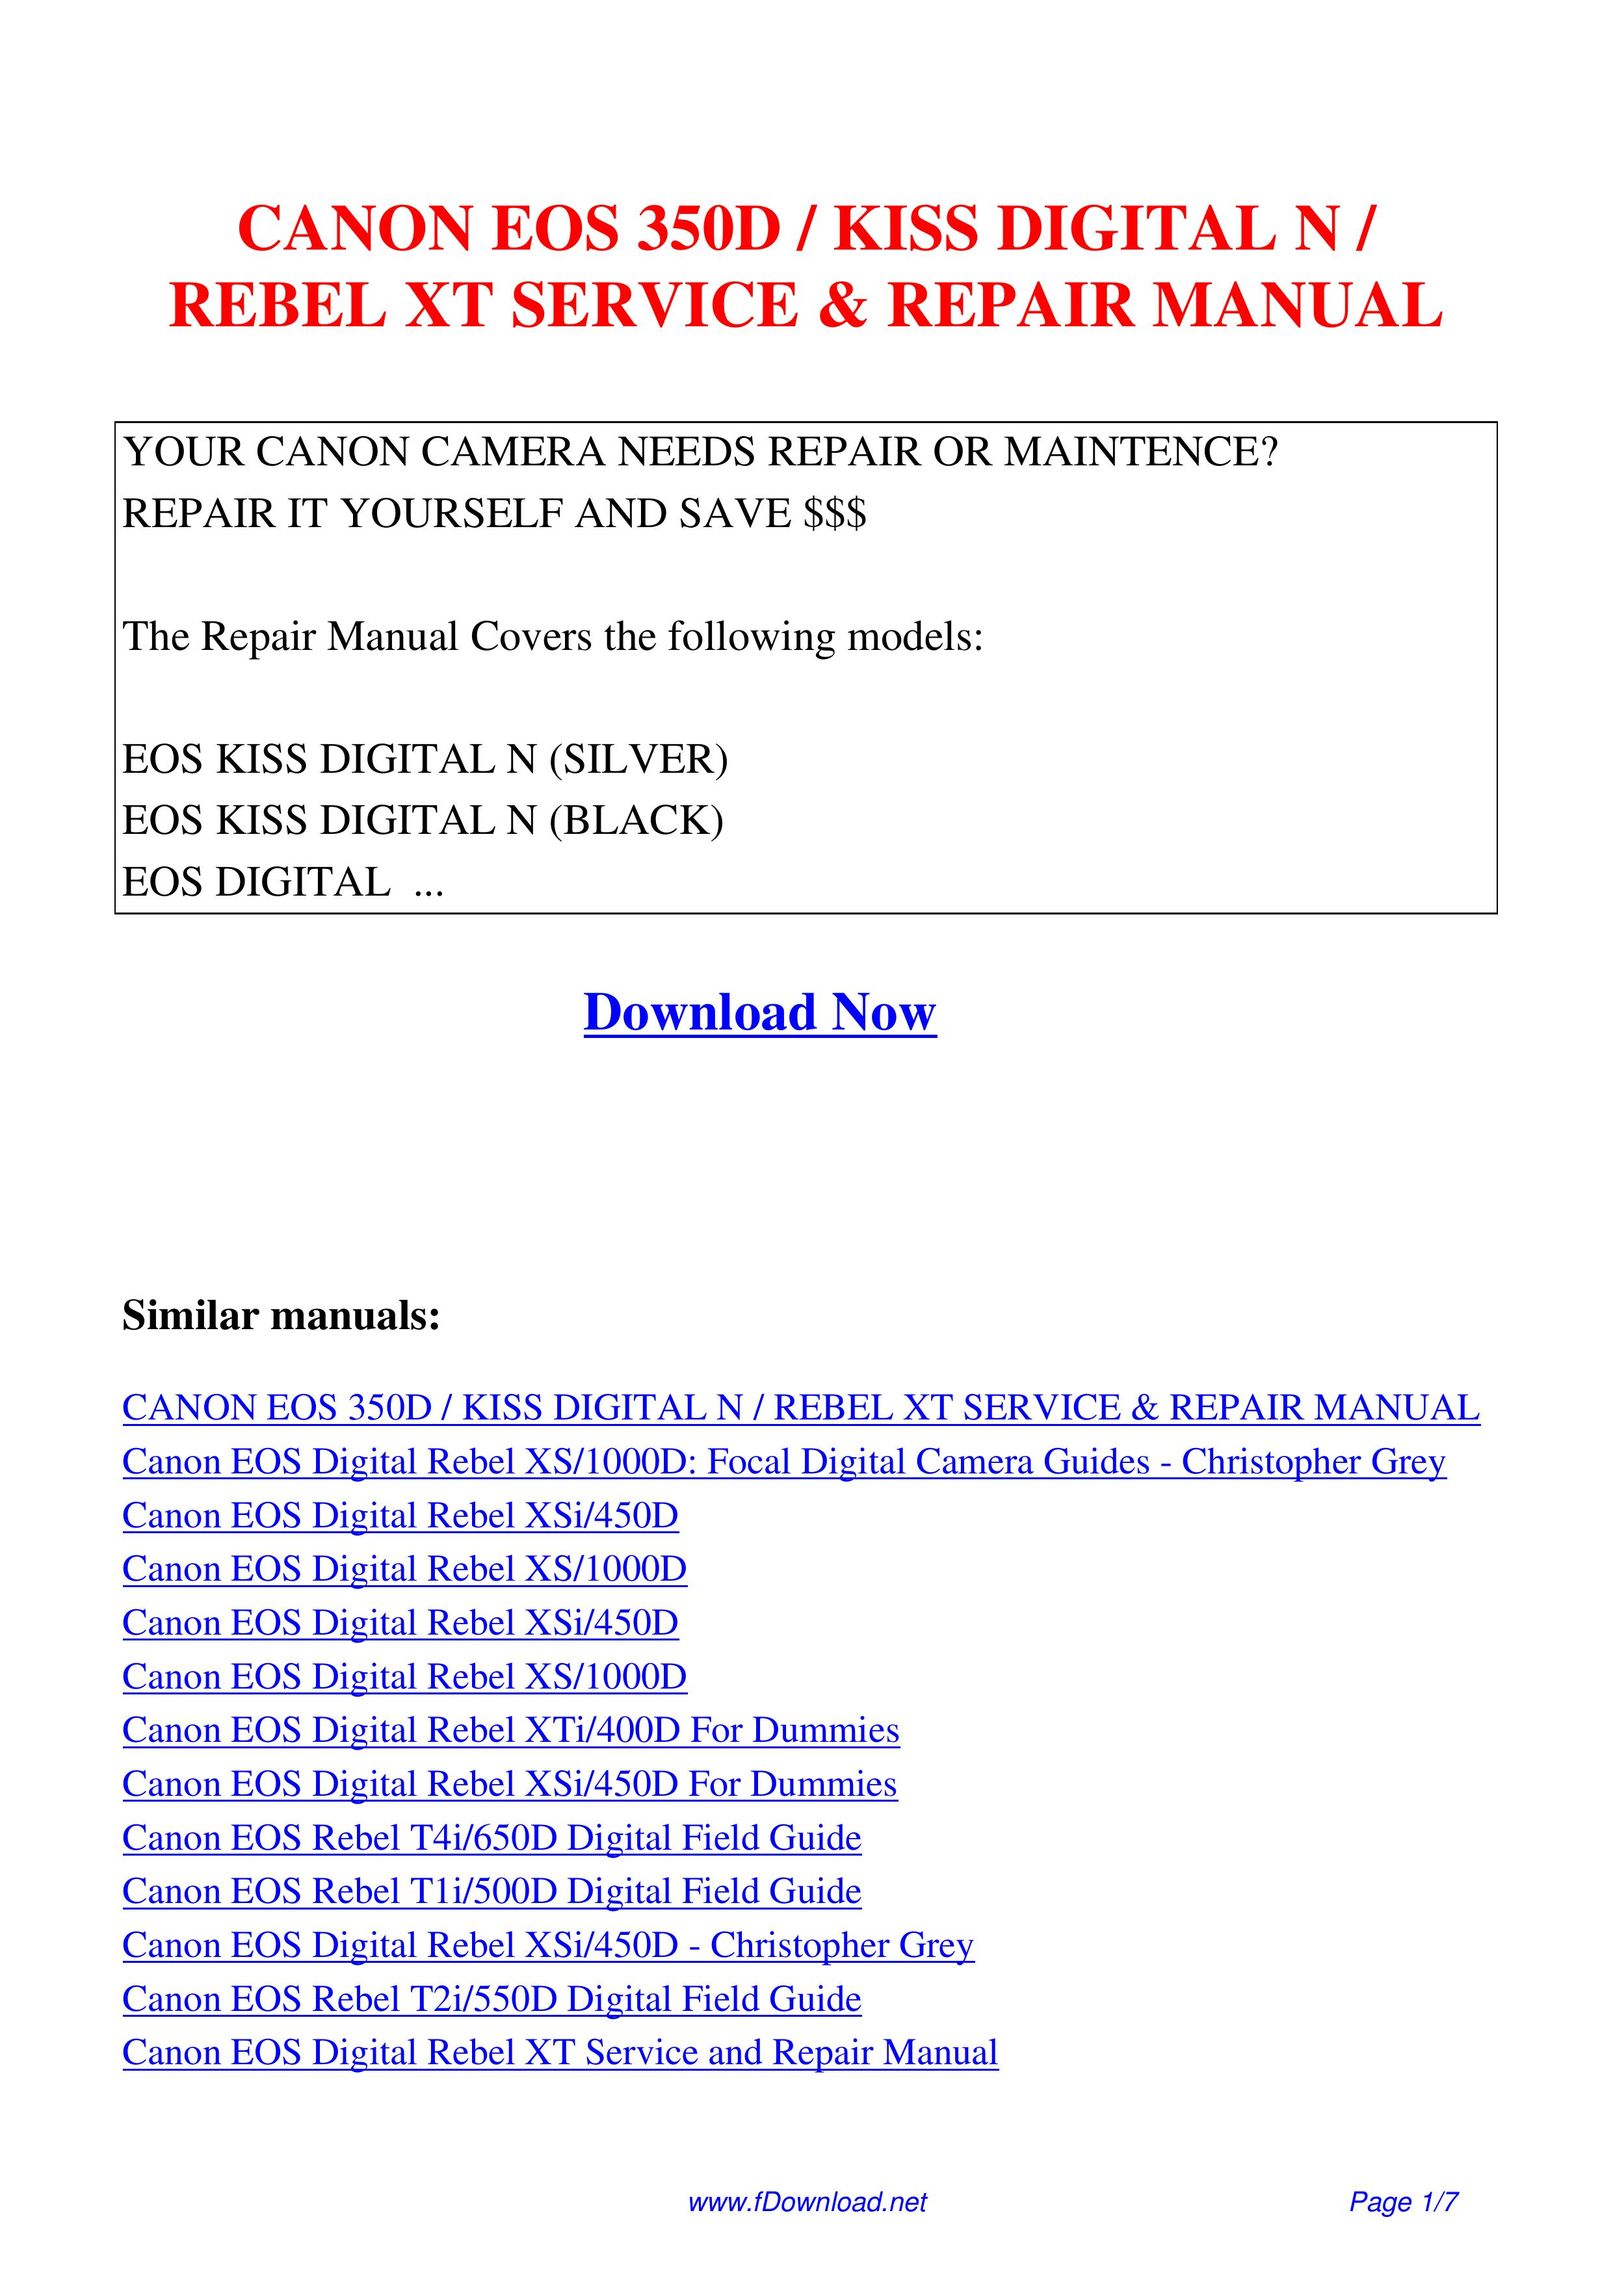 Canon EOS350D Webcam User Manual